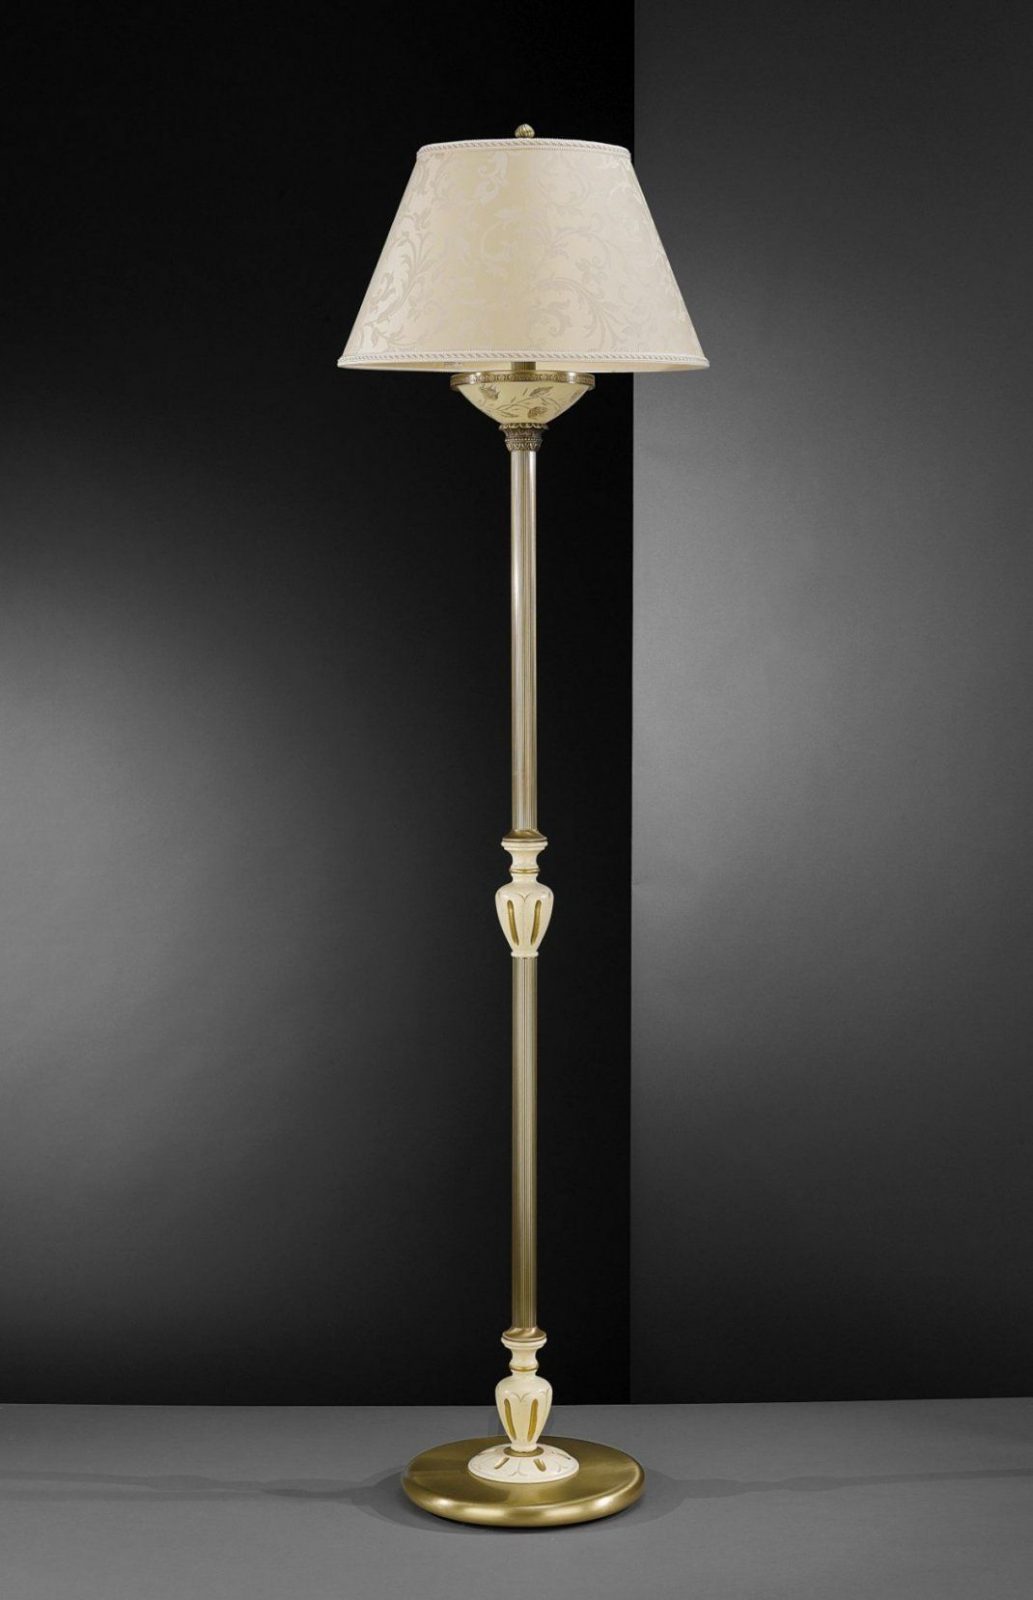 Stehlampe Aus Messing Holz Und Creme Glas Mit Lampenschirm von Glas Lampenschirm Für Stehlampe Bild